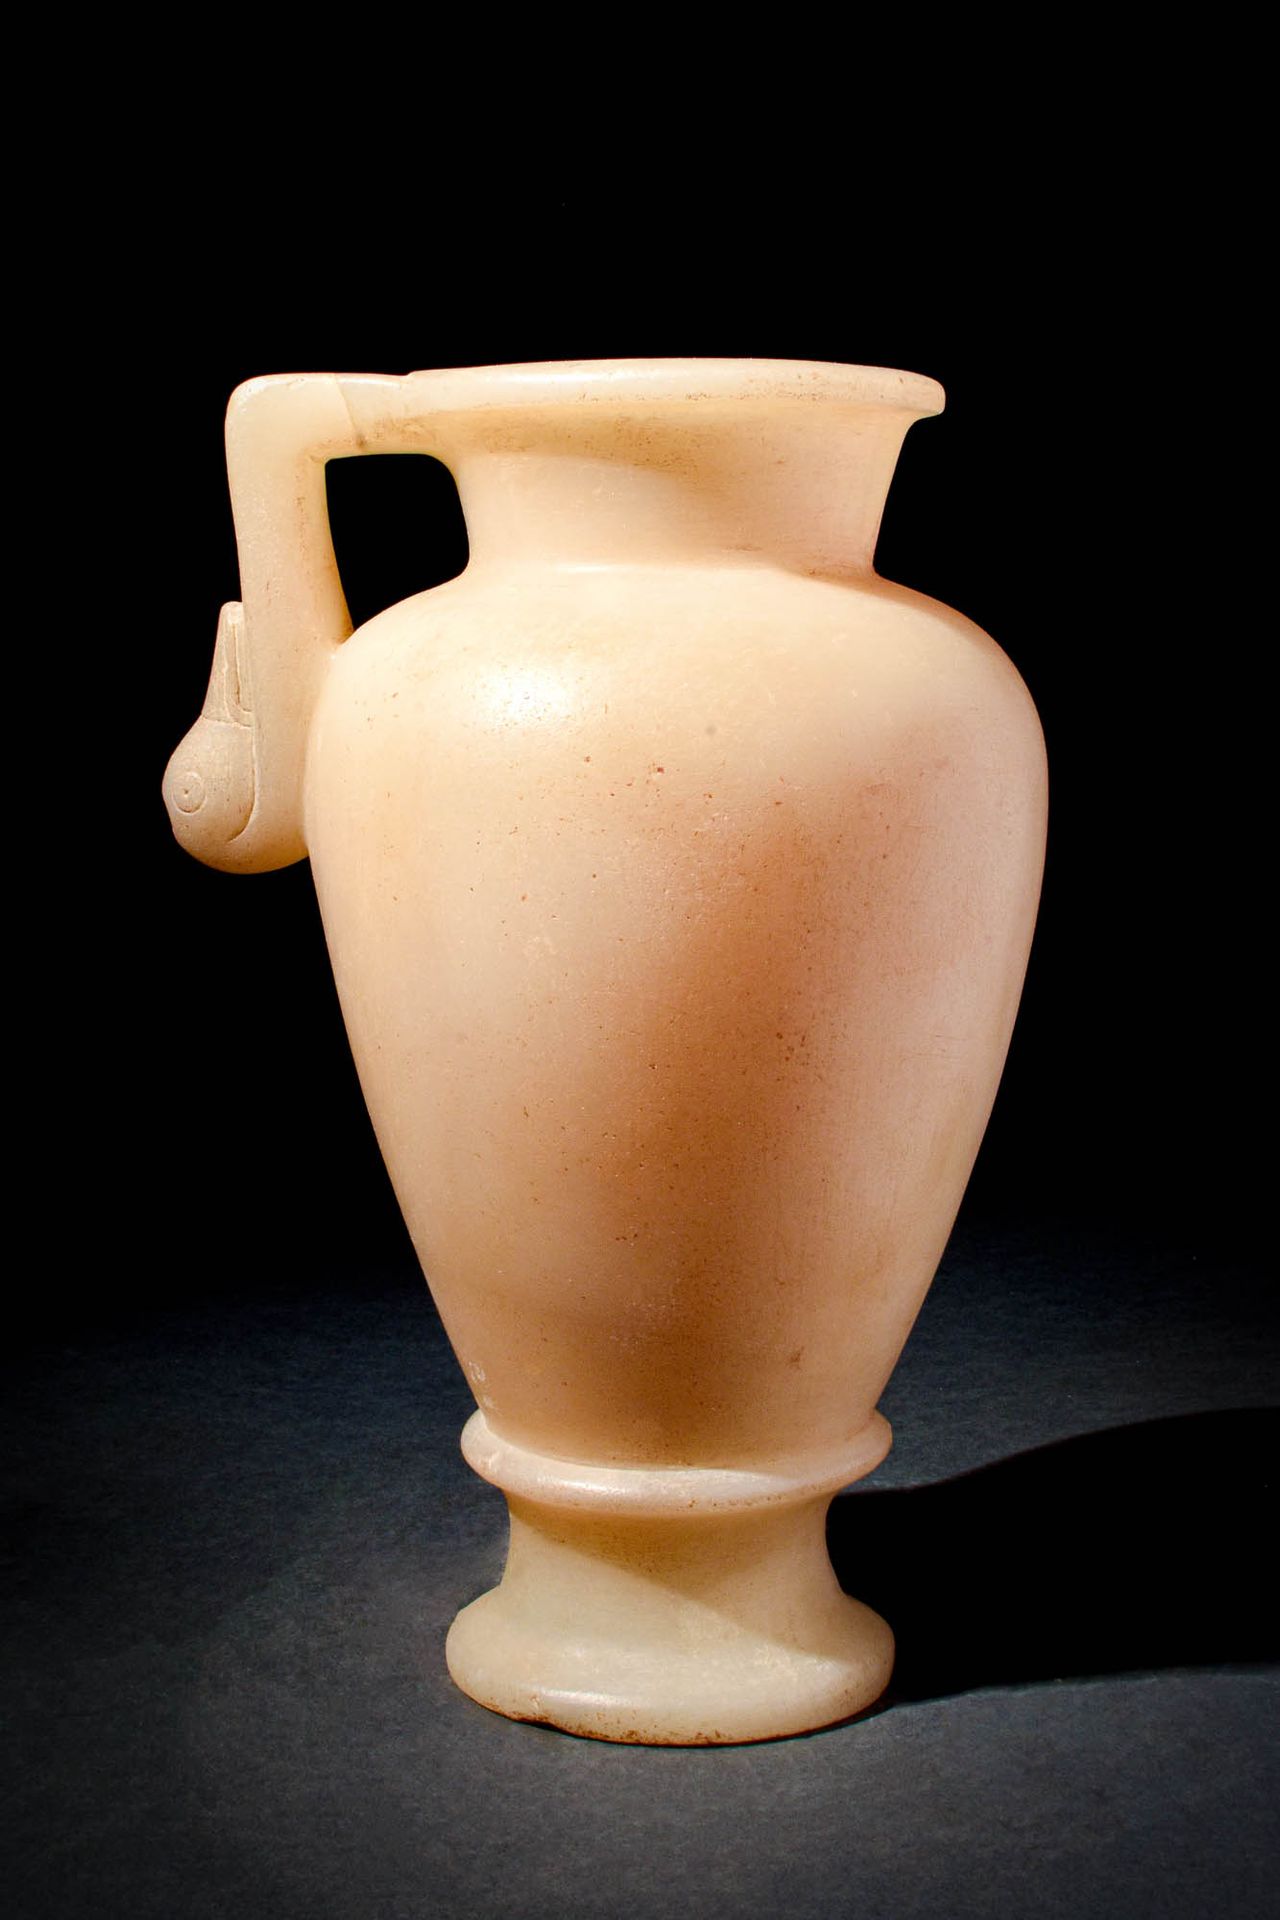 HELLENISTIC ALABASTER VESSEL 约公元前 300 - 100 年。约公元前 300-100 年。
这是一件希腊化时期的雪花石膏器皿，器&hellip;